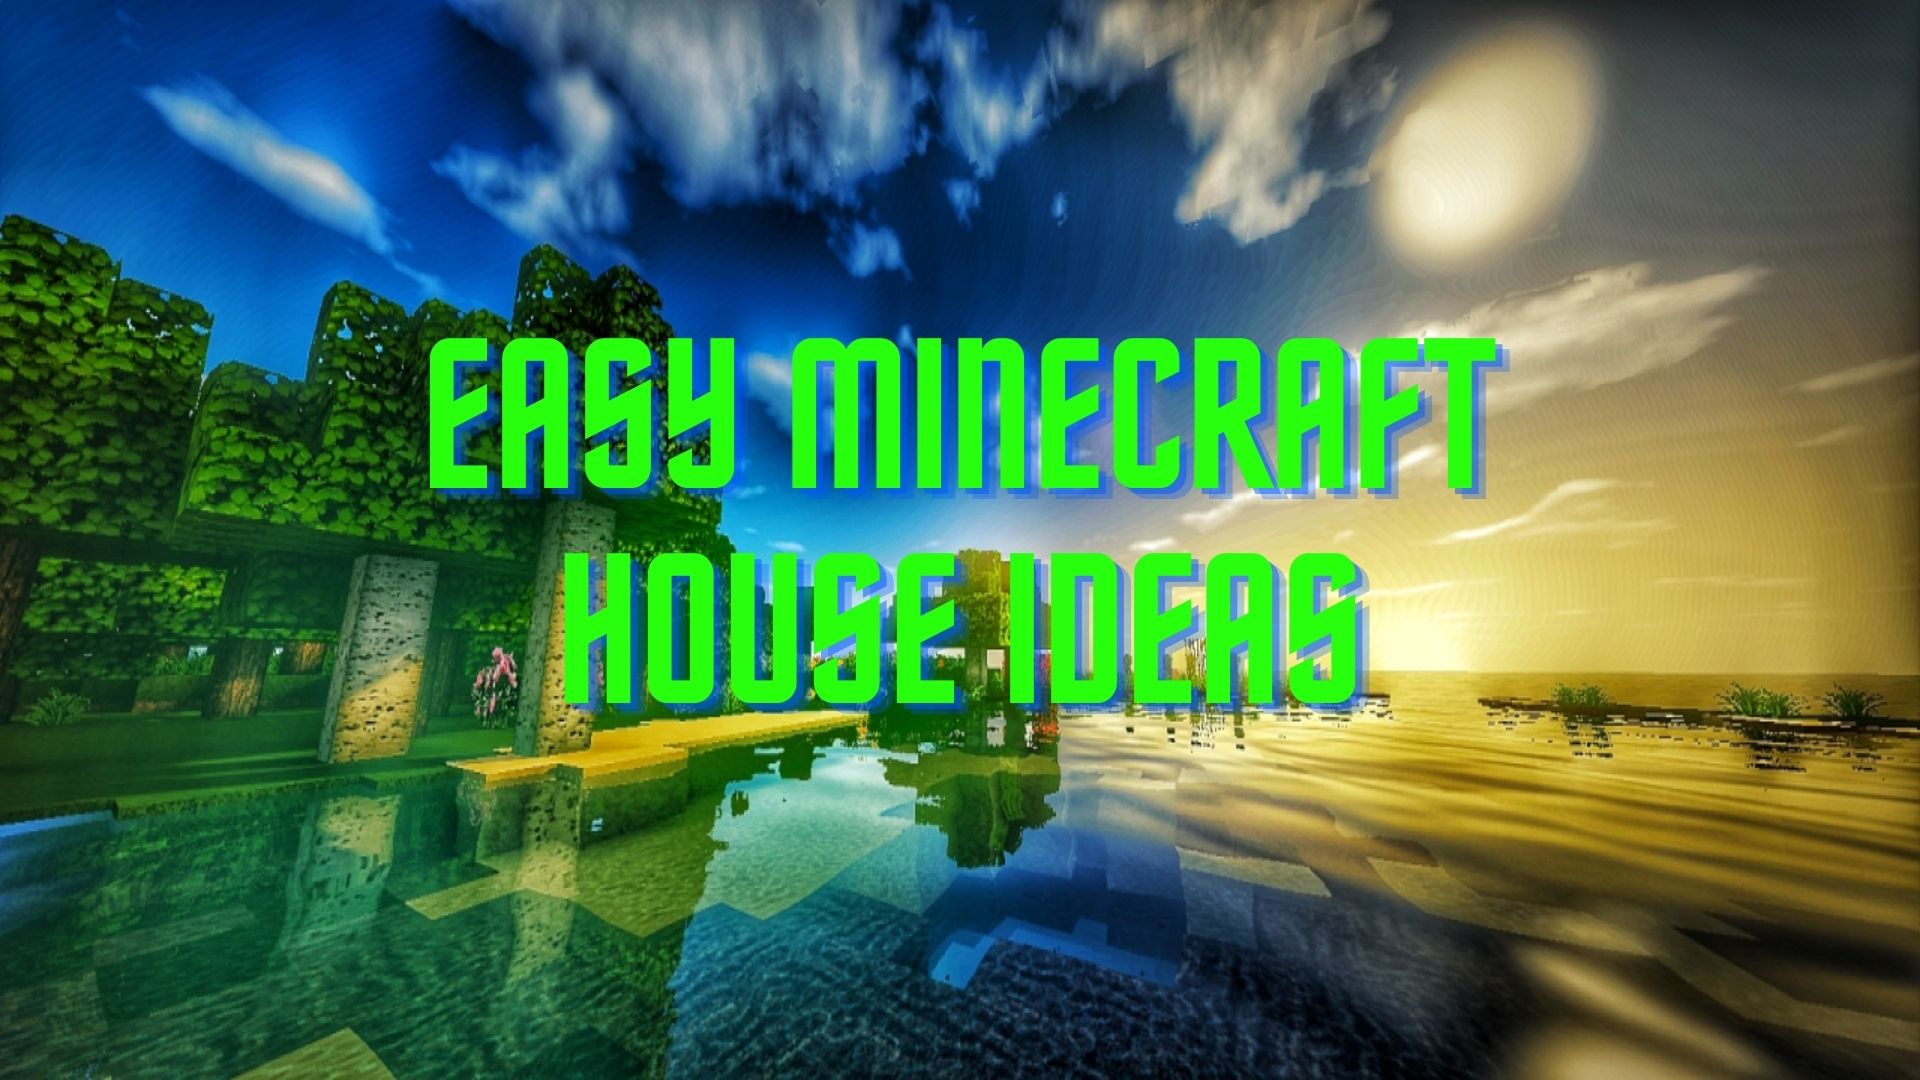 easy minecraft house ideas